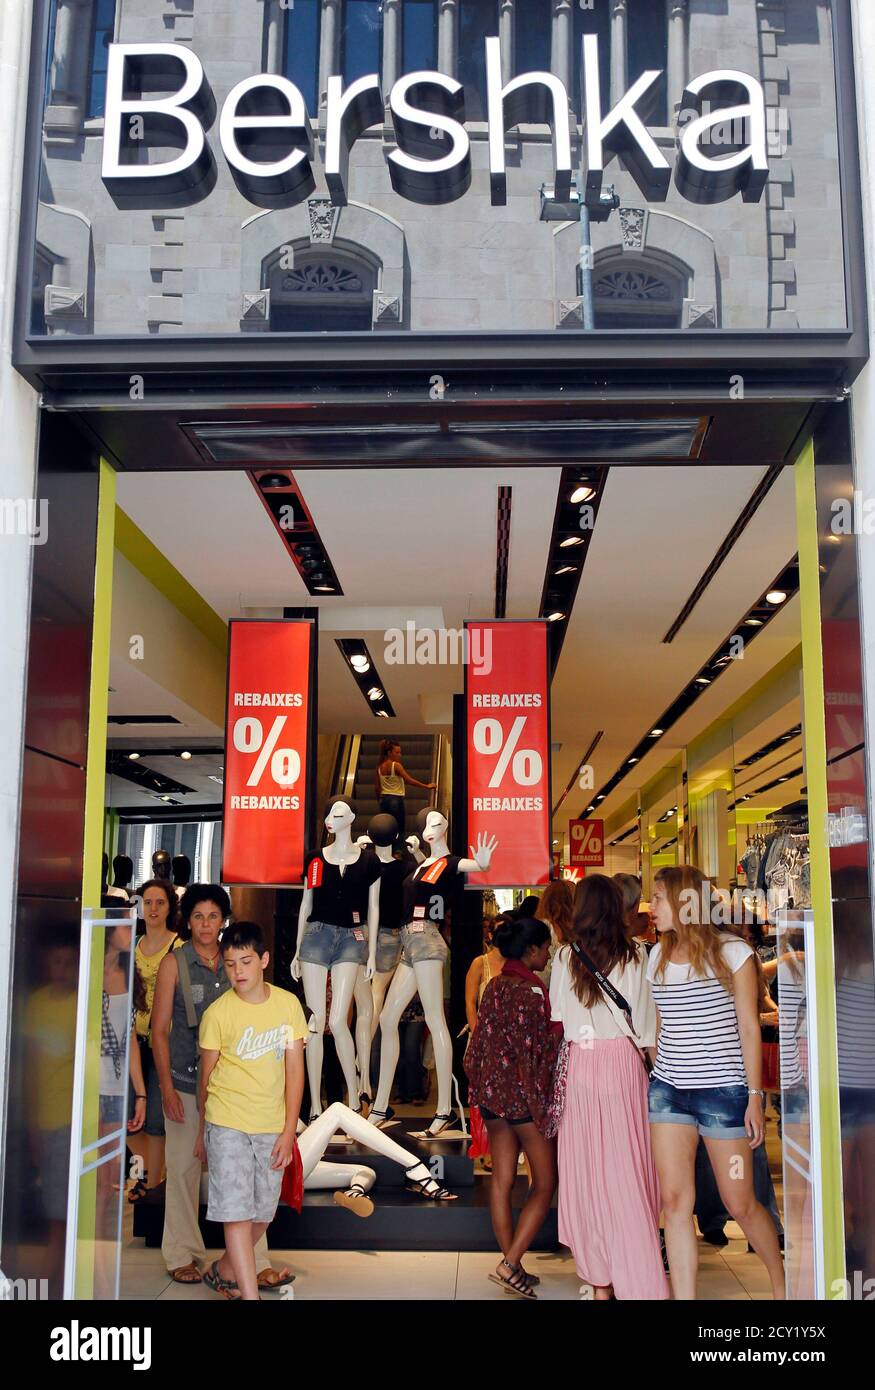 La gente es vista en la entrada de una Bershka en el centro de Barcelona  durante las ventas de verano, el 2 de julio de 2012. REUTERS/Albert Gea  (ESPAÑA - Tags: NEGOCIOS